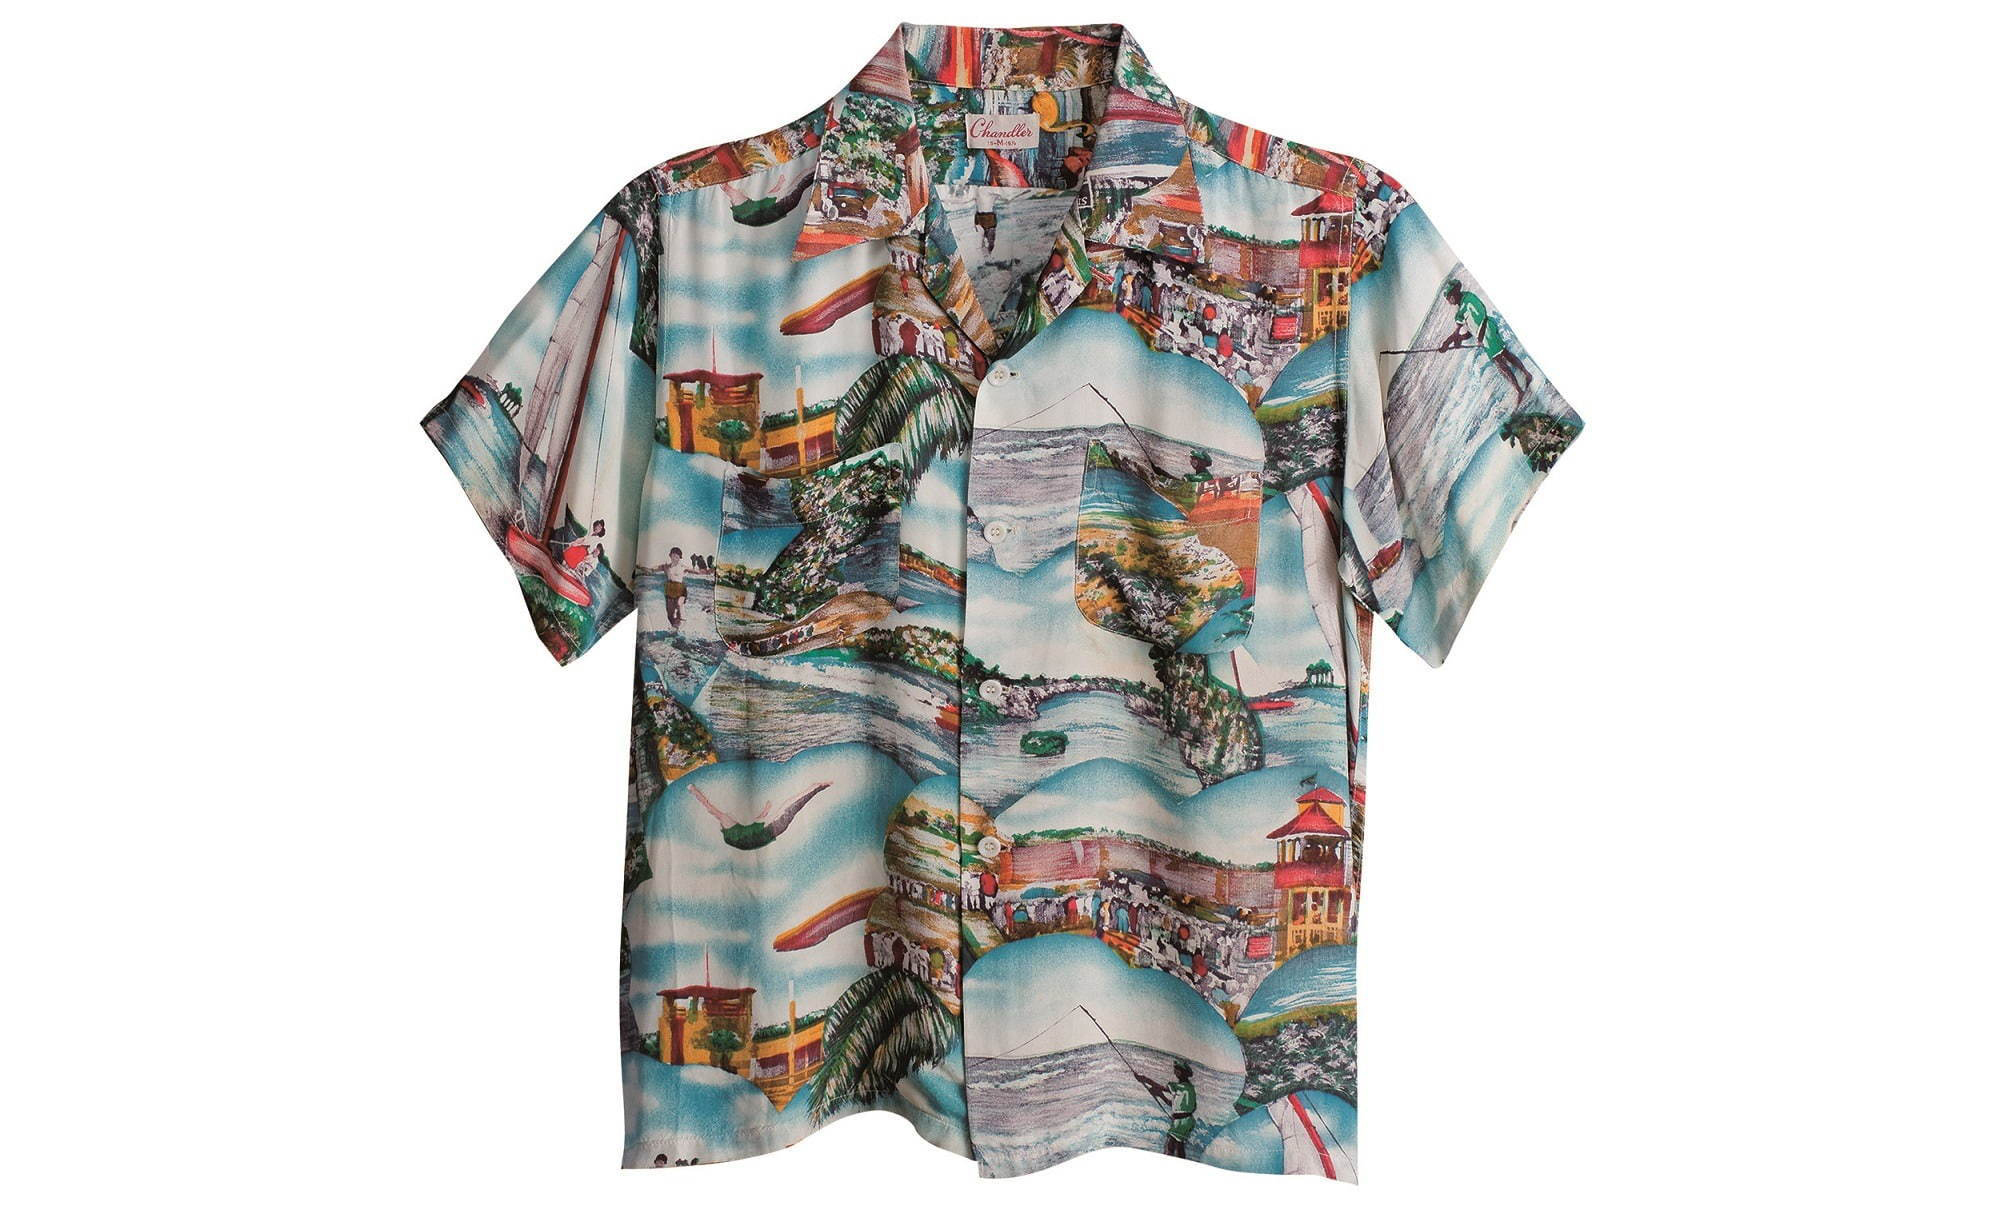 SUN SURF 联合茅崎市立美术馆举办夏威夷衬衫主题展览